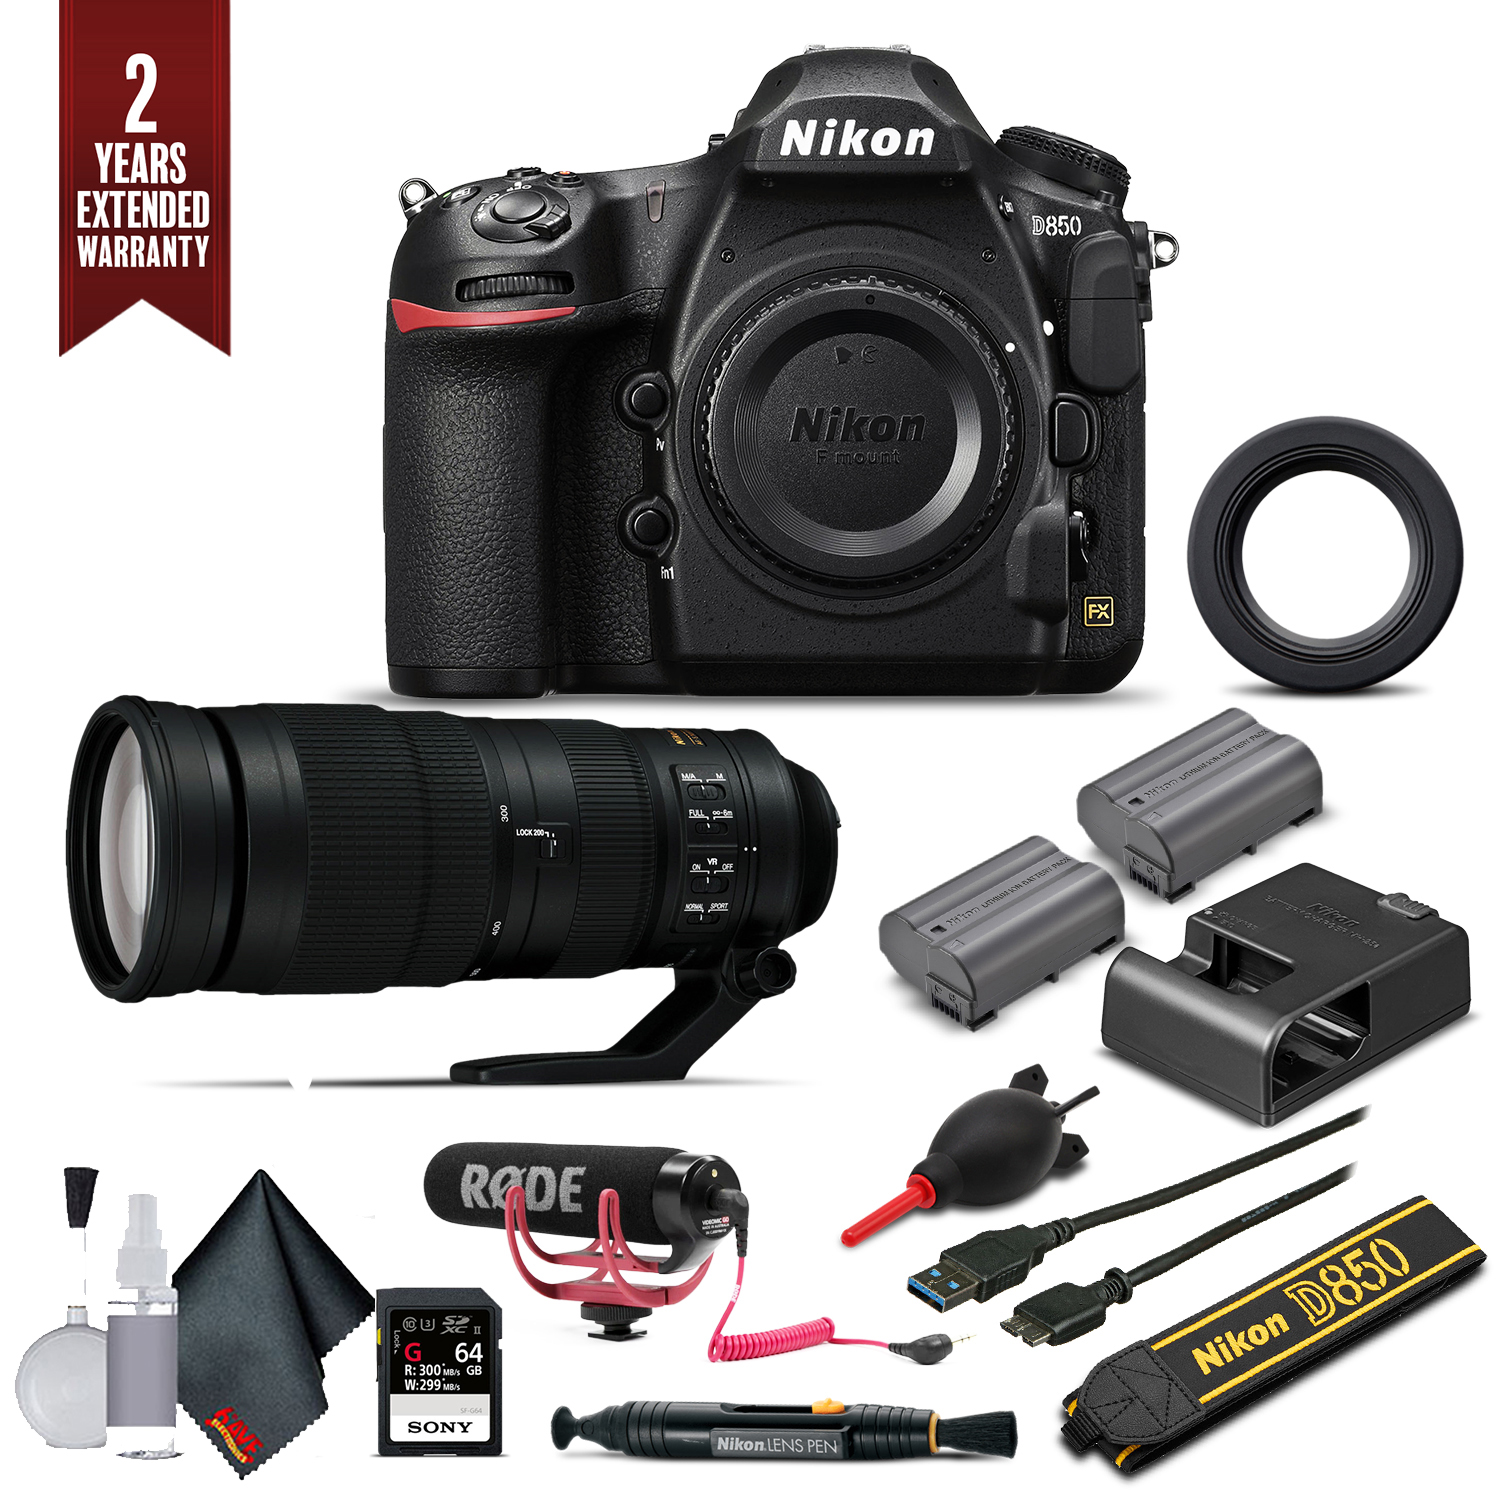 Nikon D850 Digital SLR Camera W/ Nikon AF-S FX NIKKOR 200-500mm f/5.6E ED Lens, Mic, Extra Battery, and More. (Intl Model) - image 1 of 4